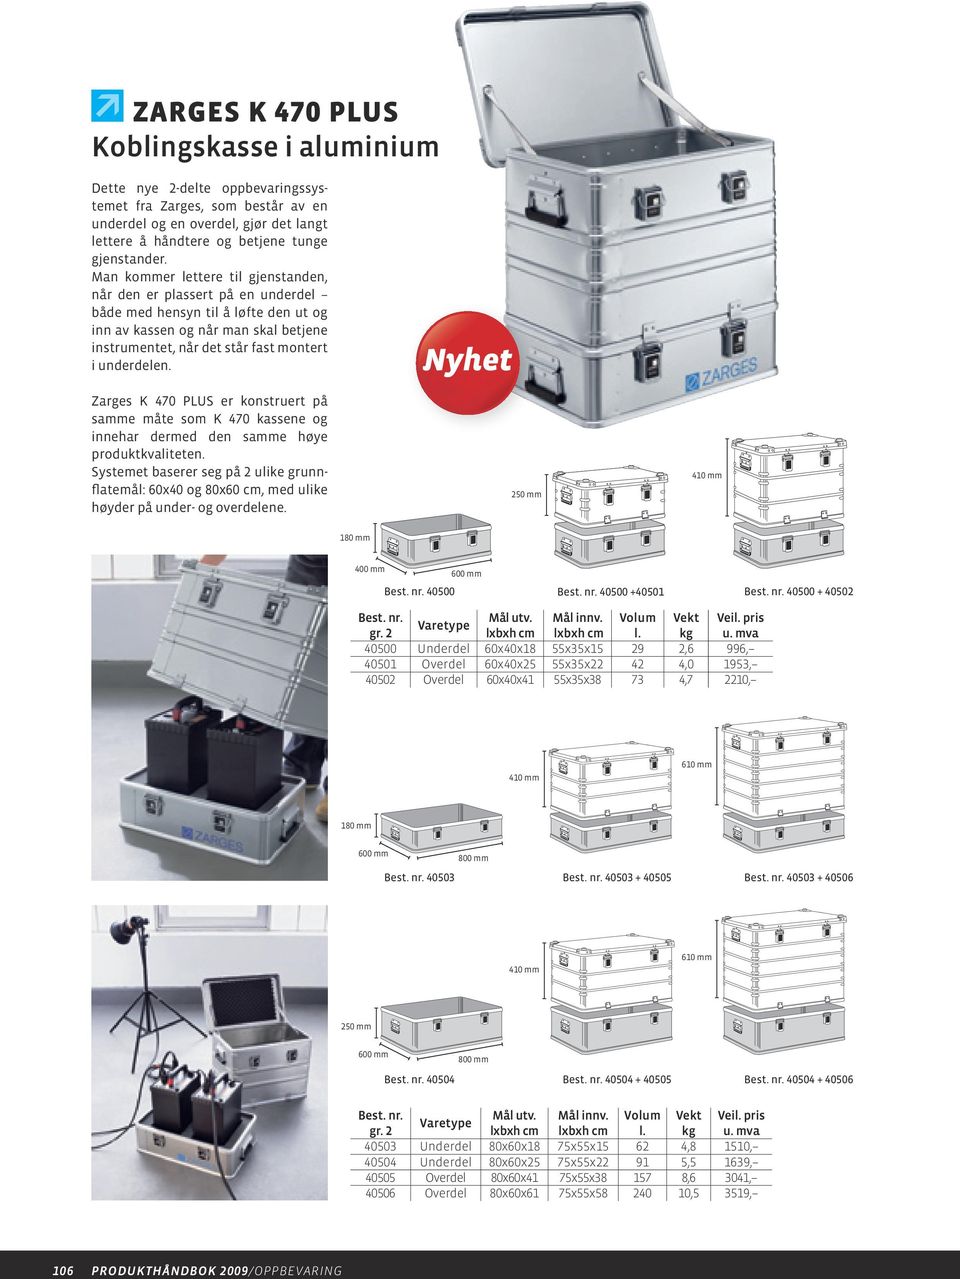 Zarges K 470 PLUS er konstruert på samme måte som K 470 kassene og innehar dermed den samme høye produkt kvaliteten.